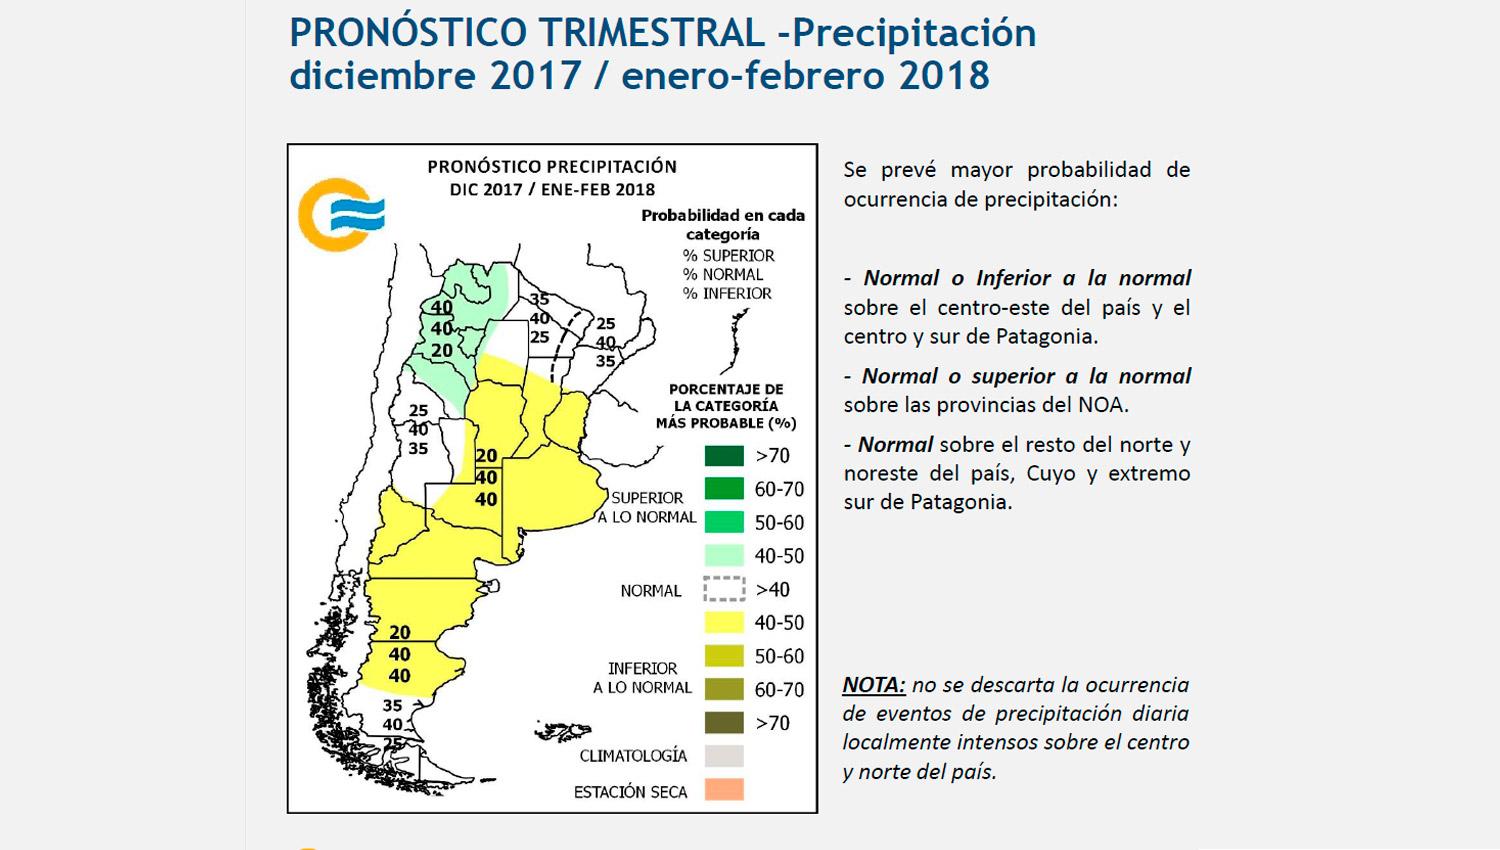 Pronostican que el verano tucumano tendrá temperaturas y precipitaciones superiores a las normales